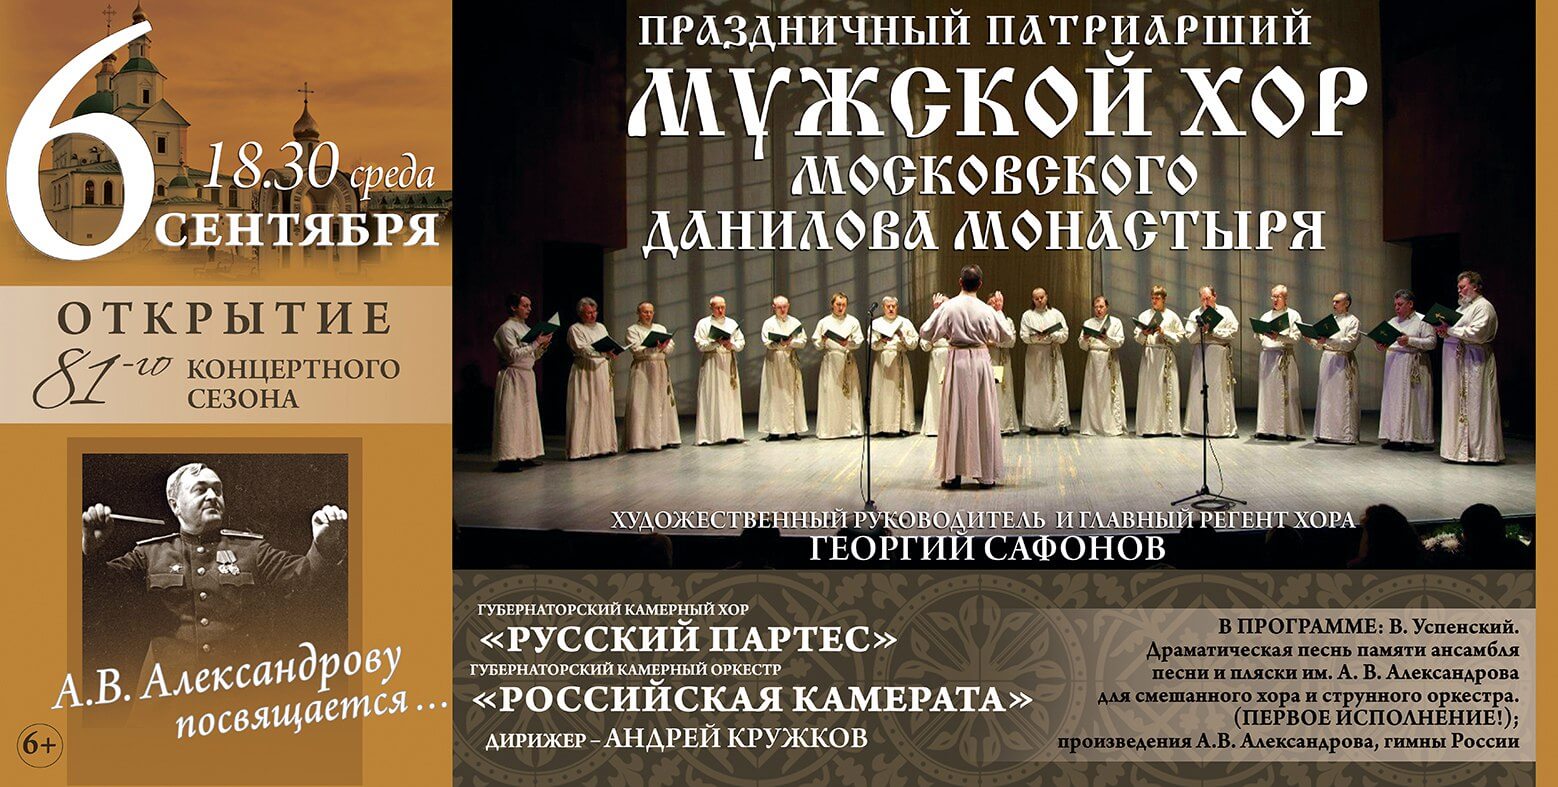 Тверская филармония приглашает на открытие концертного сезона